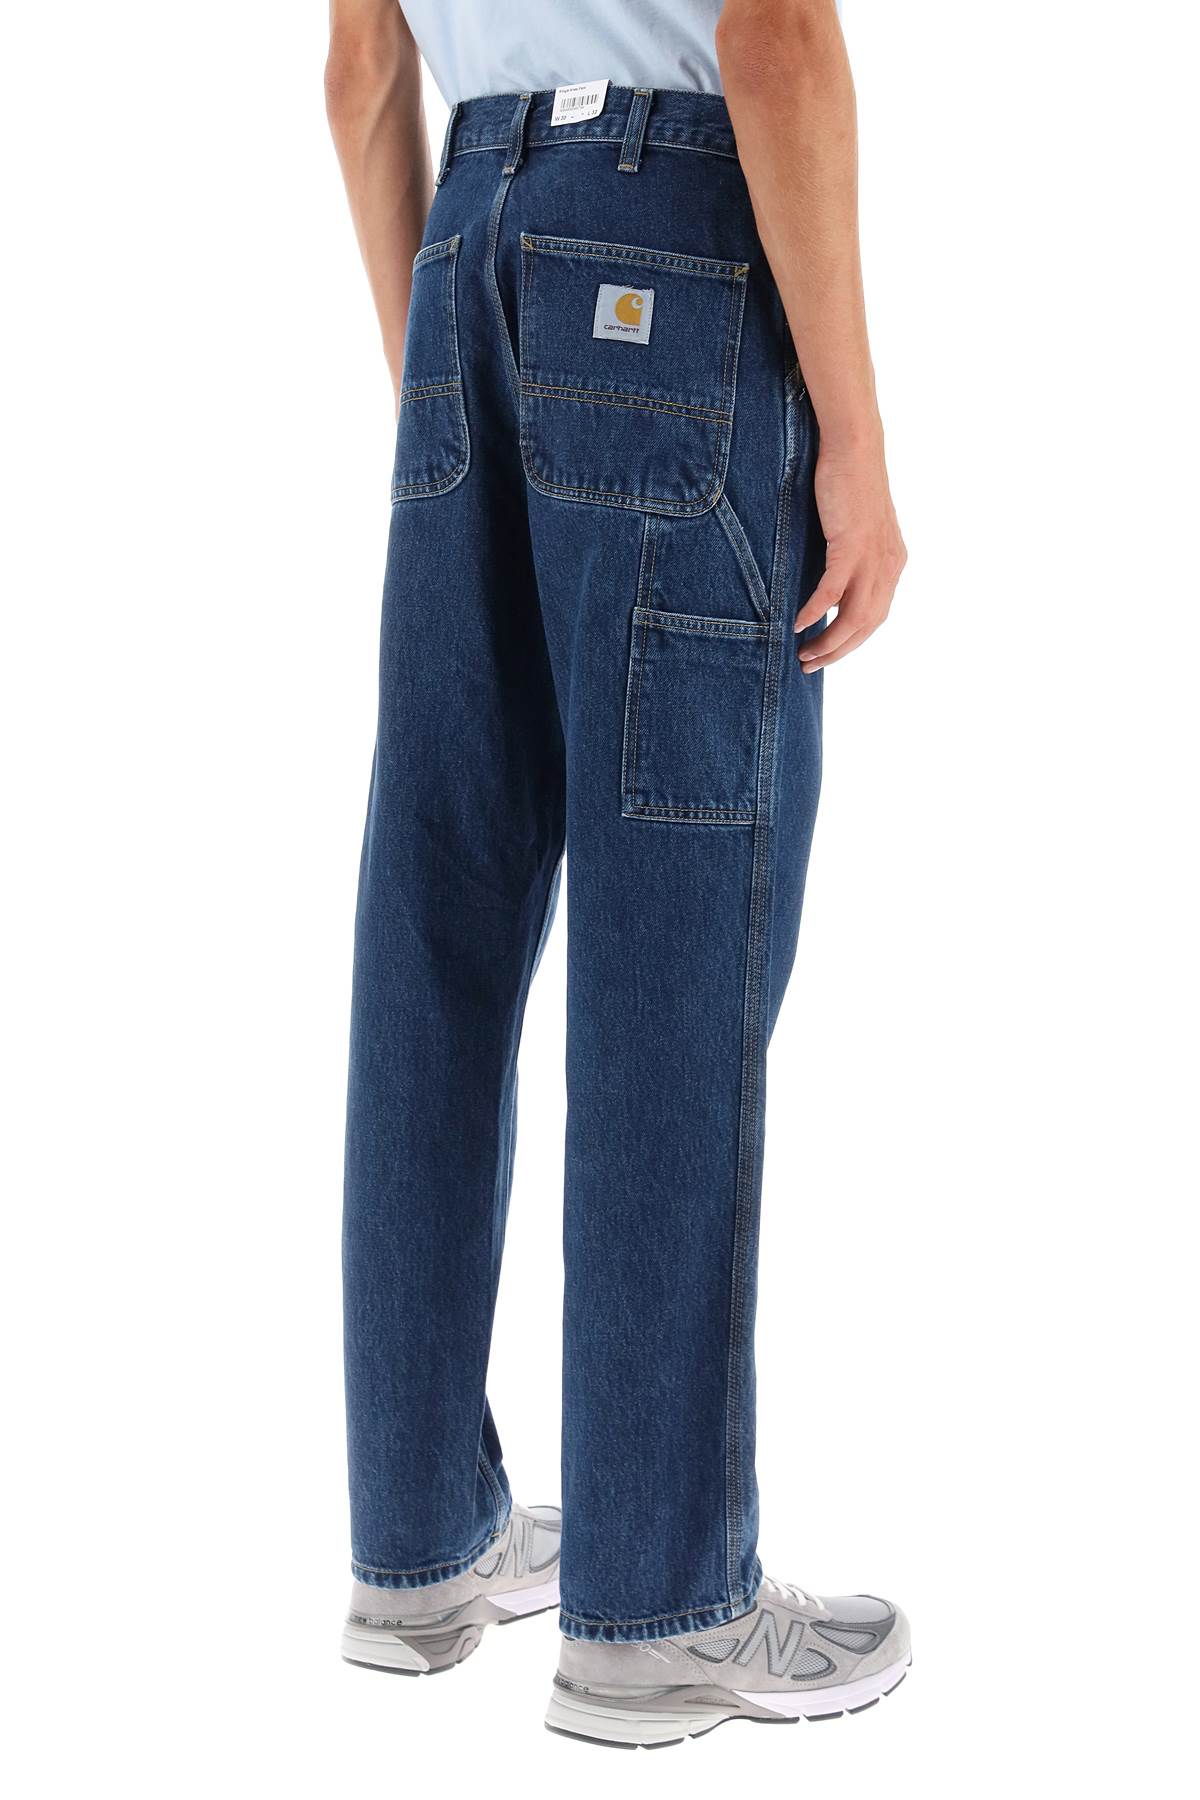 Carhartt wip 'smith' cargo jeans-2